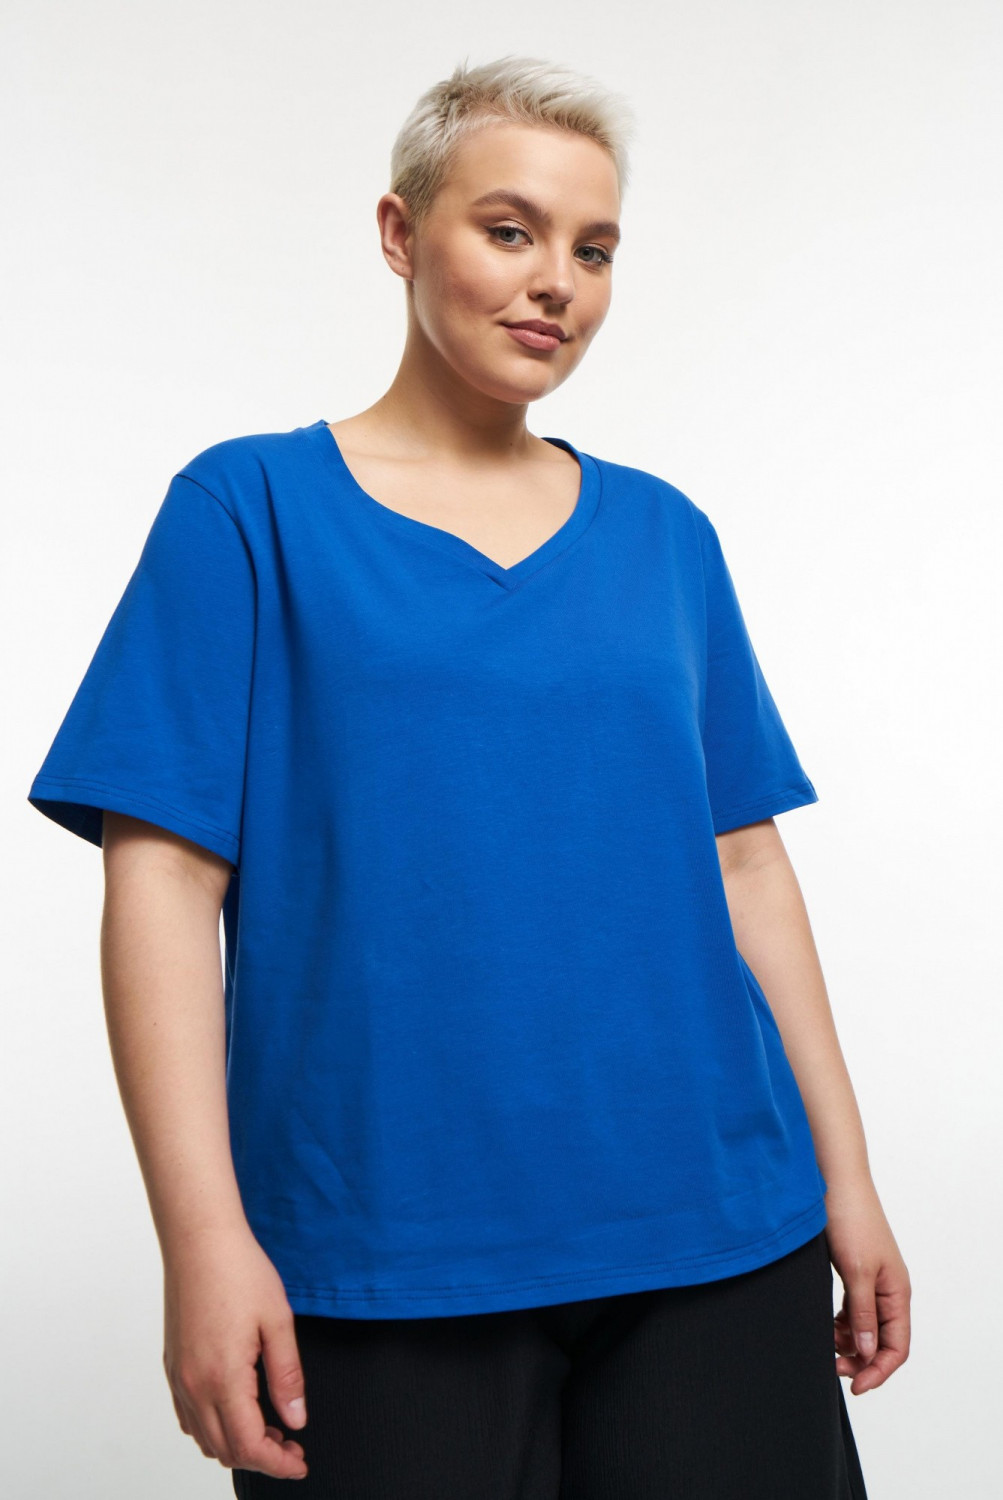 женская футболка синего цвета